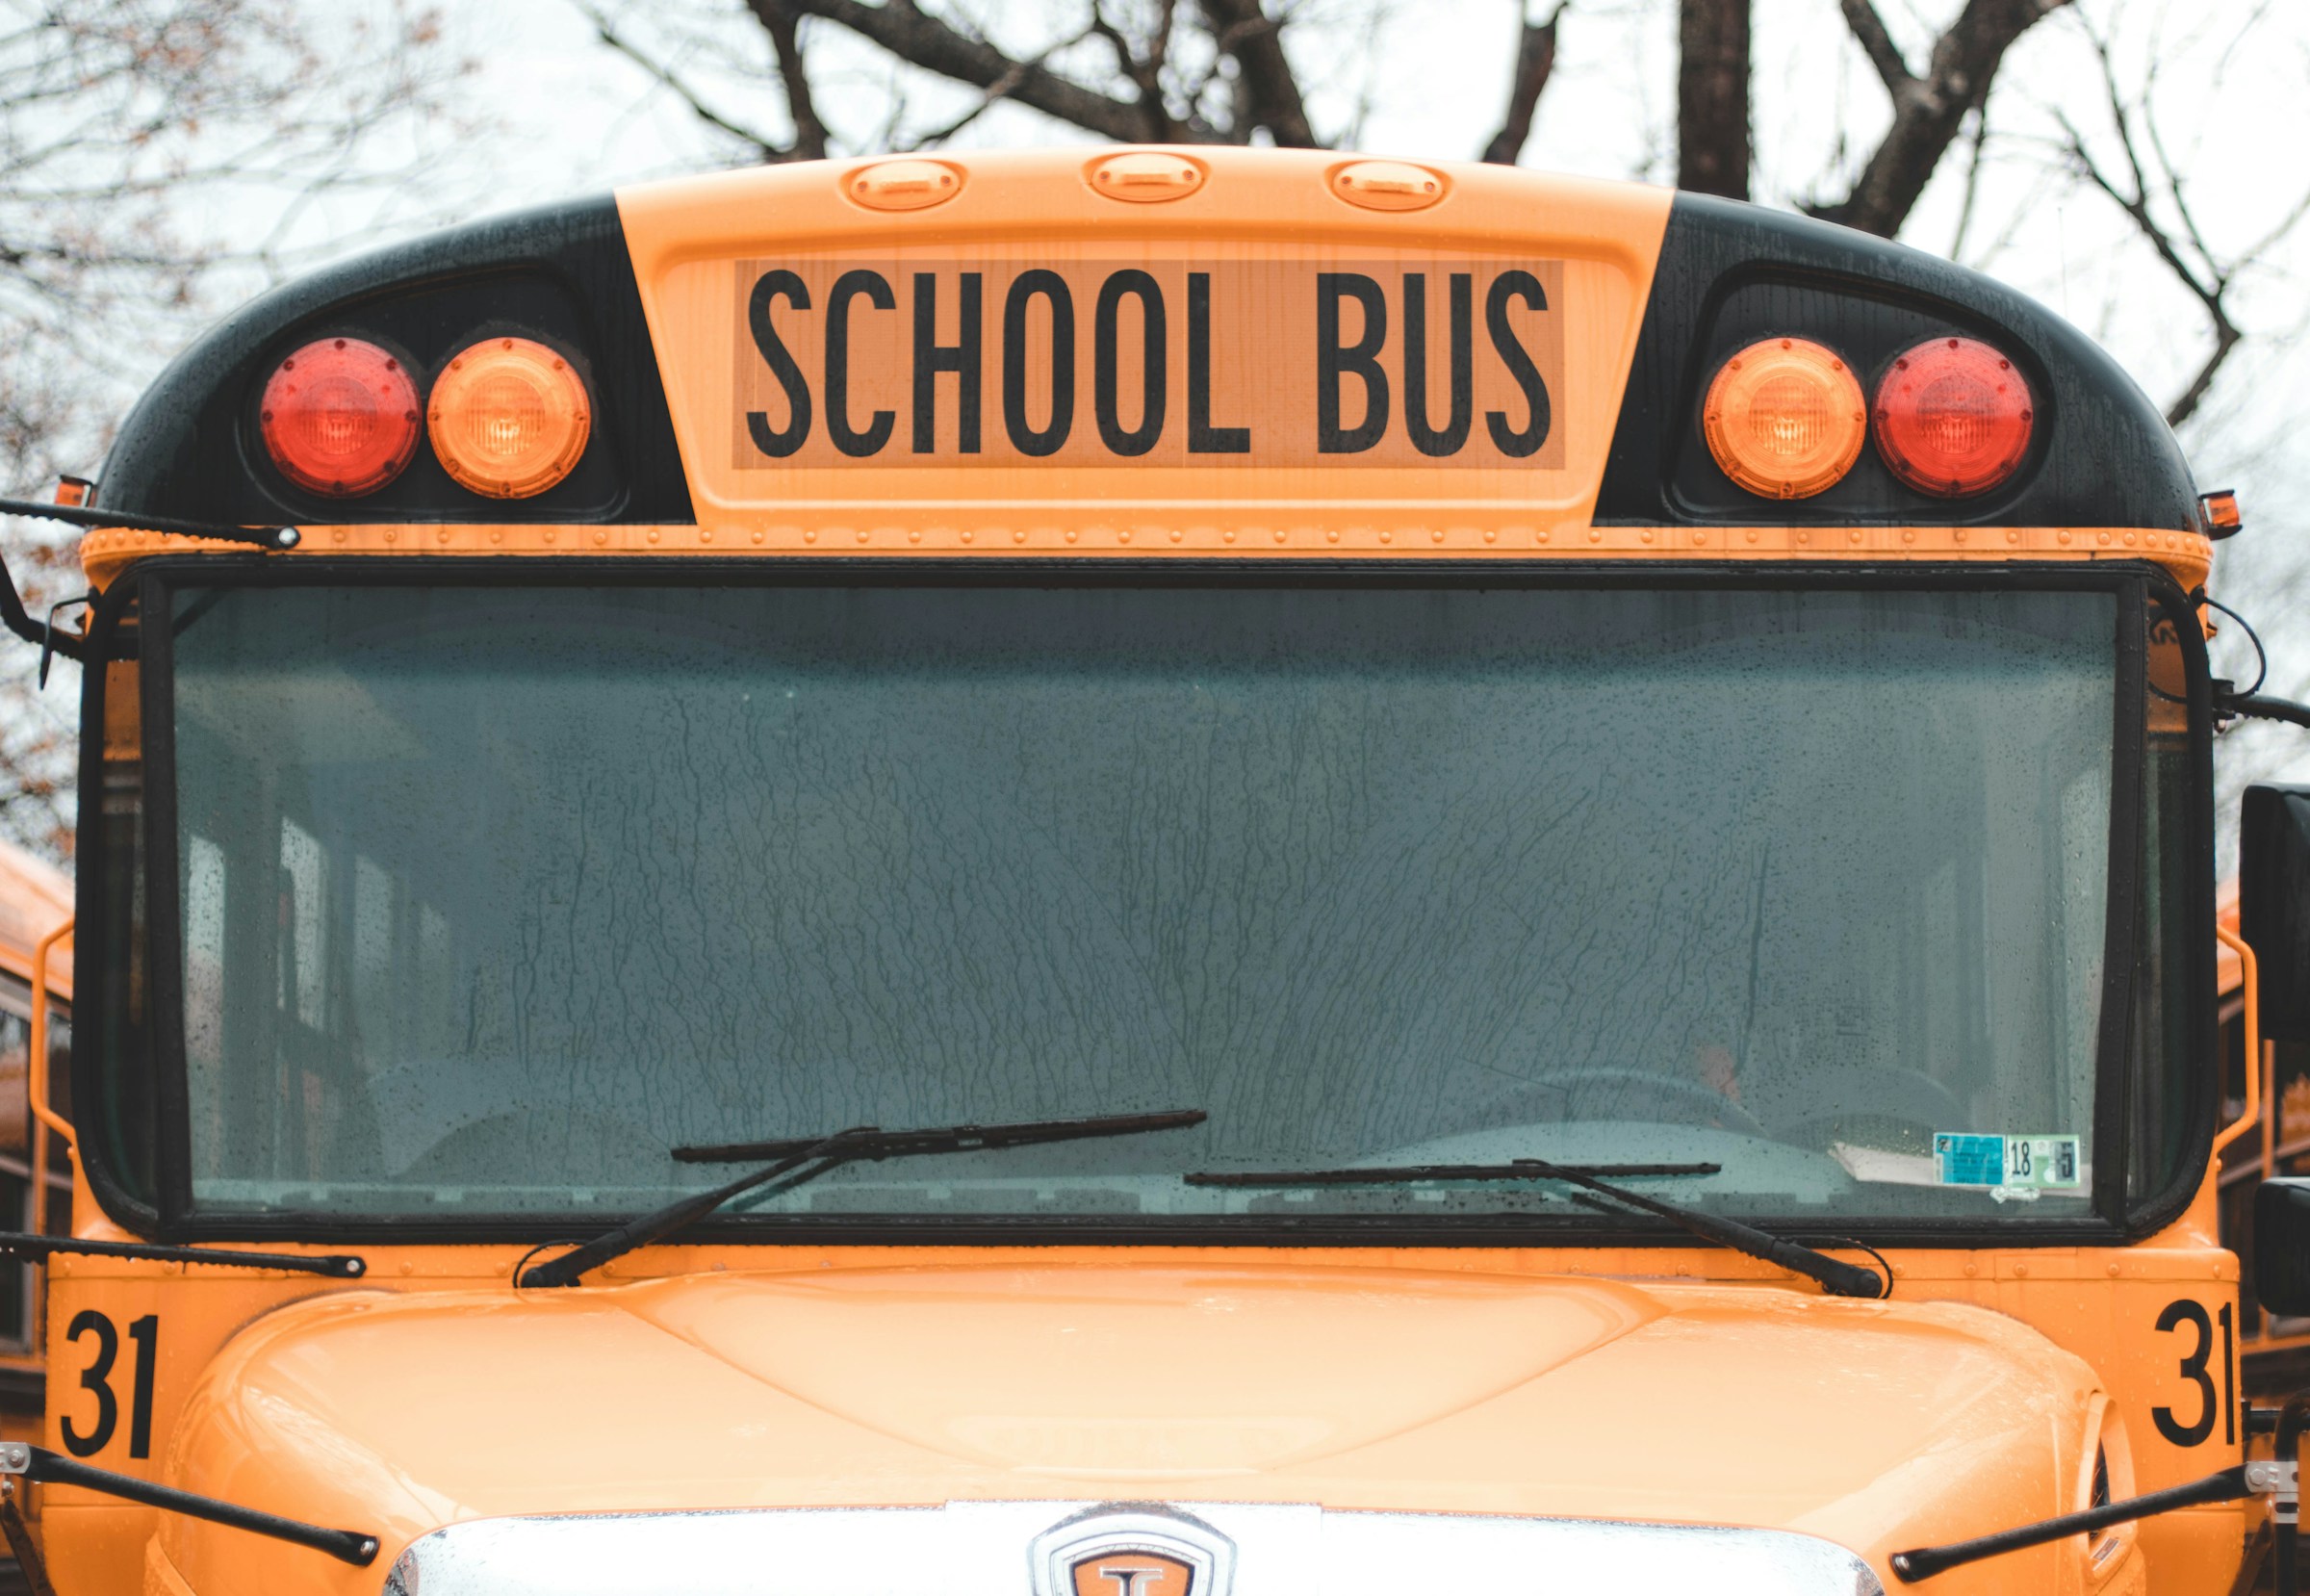 A parked school bus | Source: Unsplash